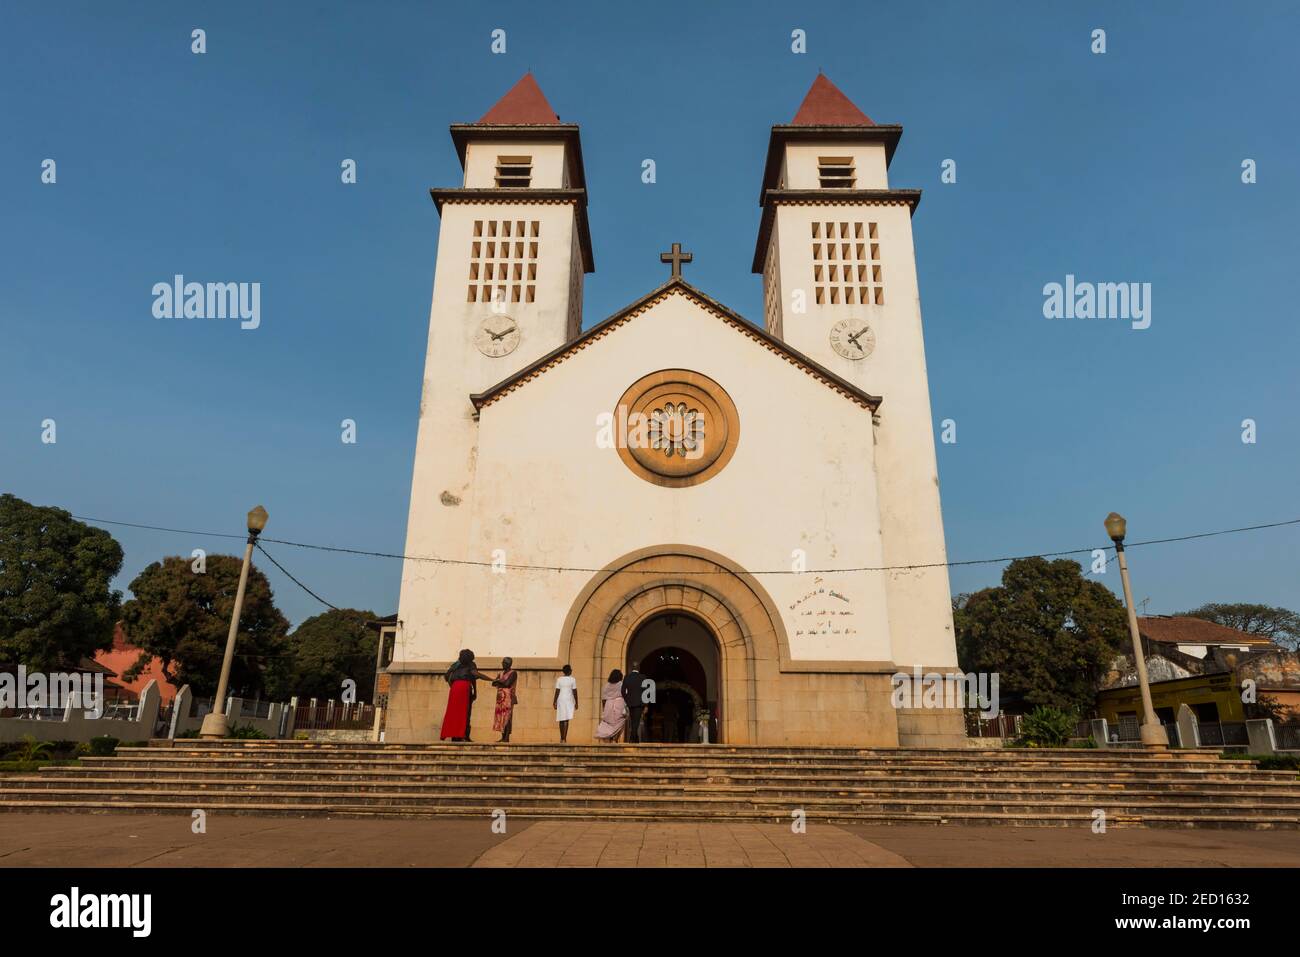 Catholic church in Bissau, Guinea Bissau Stock Photo